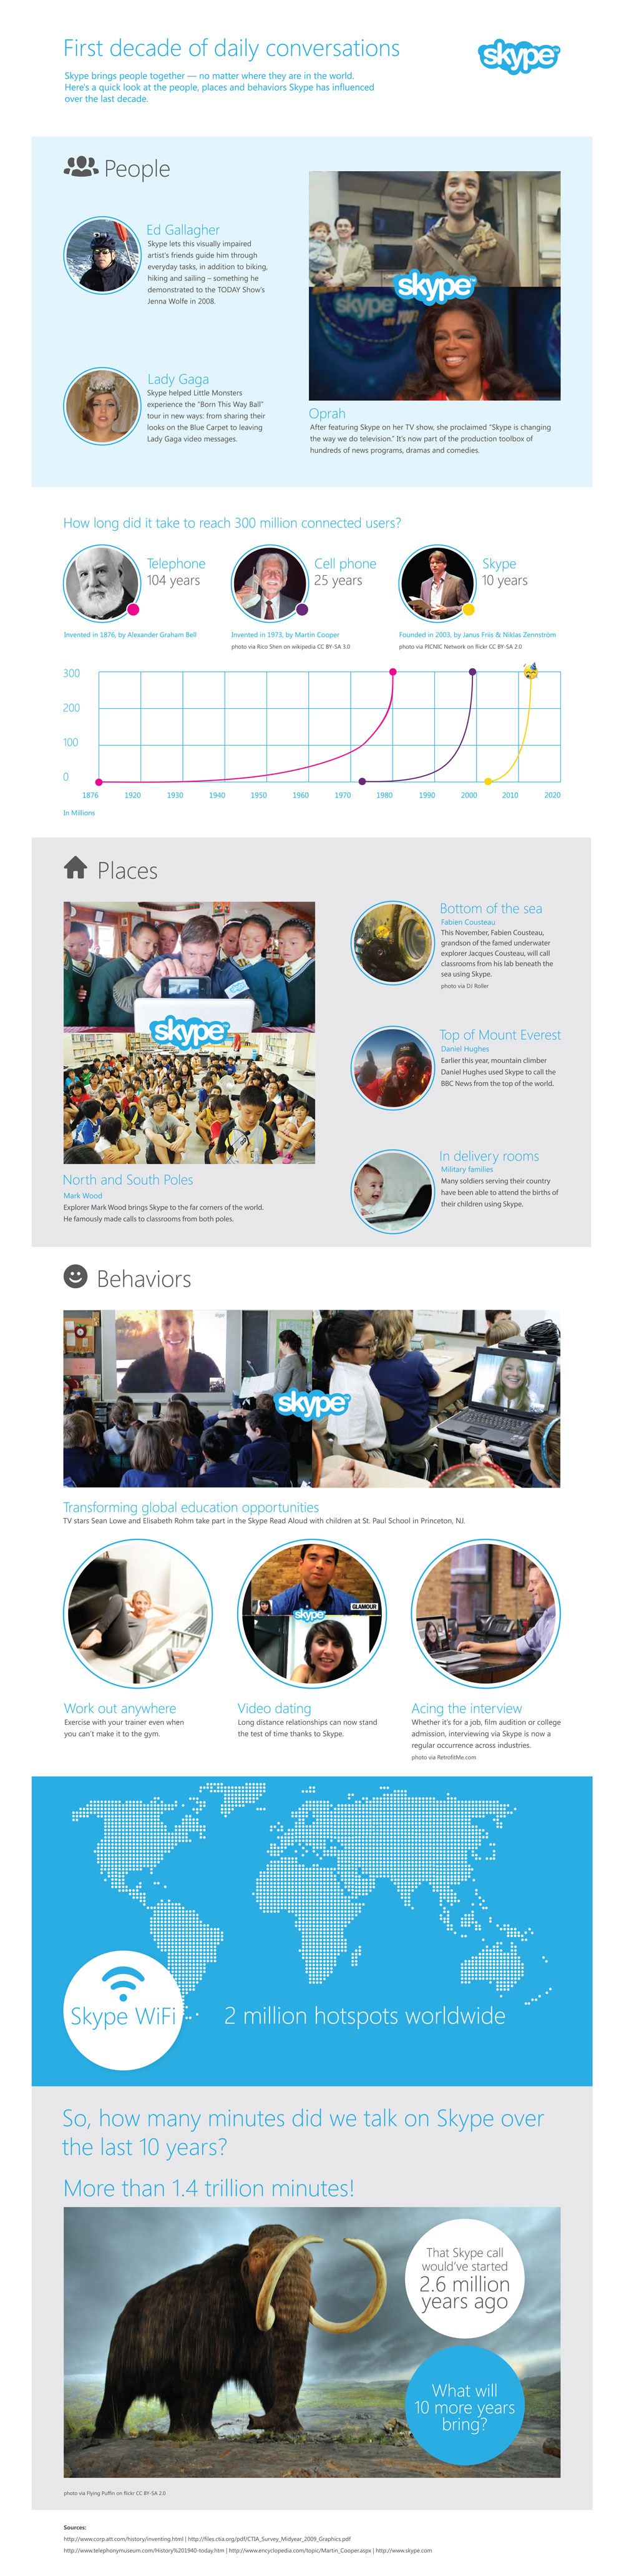 Skype-Infographic